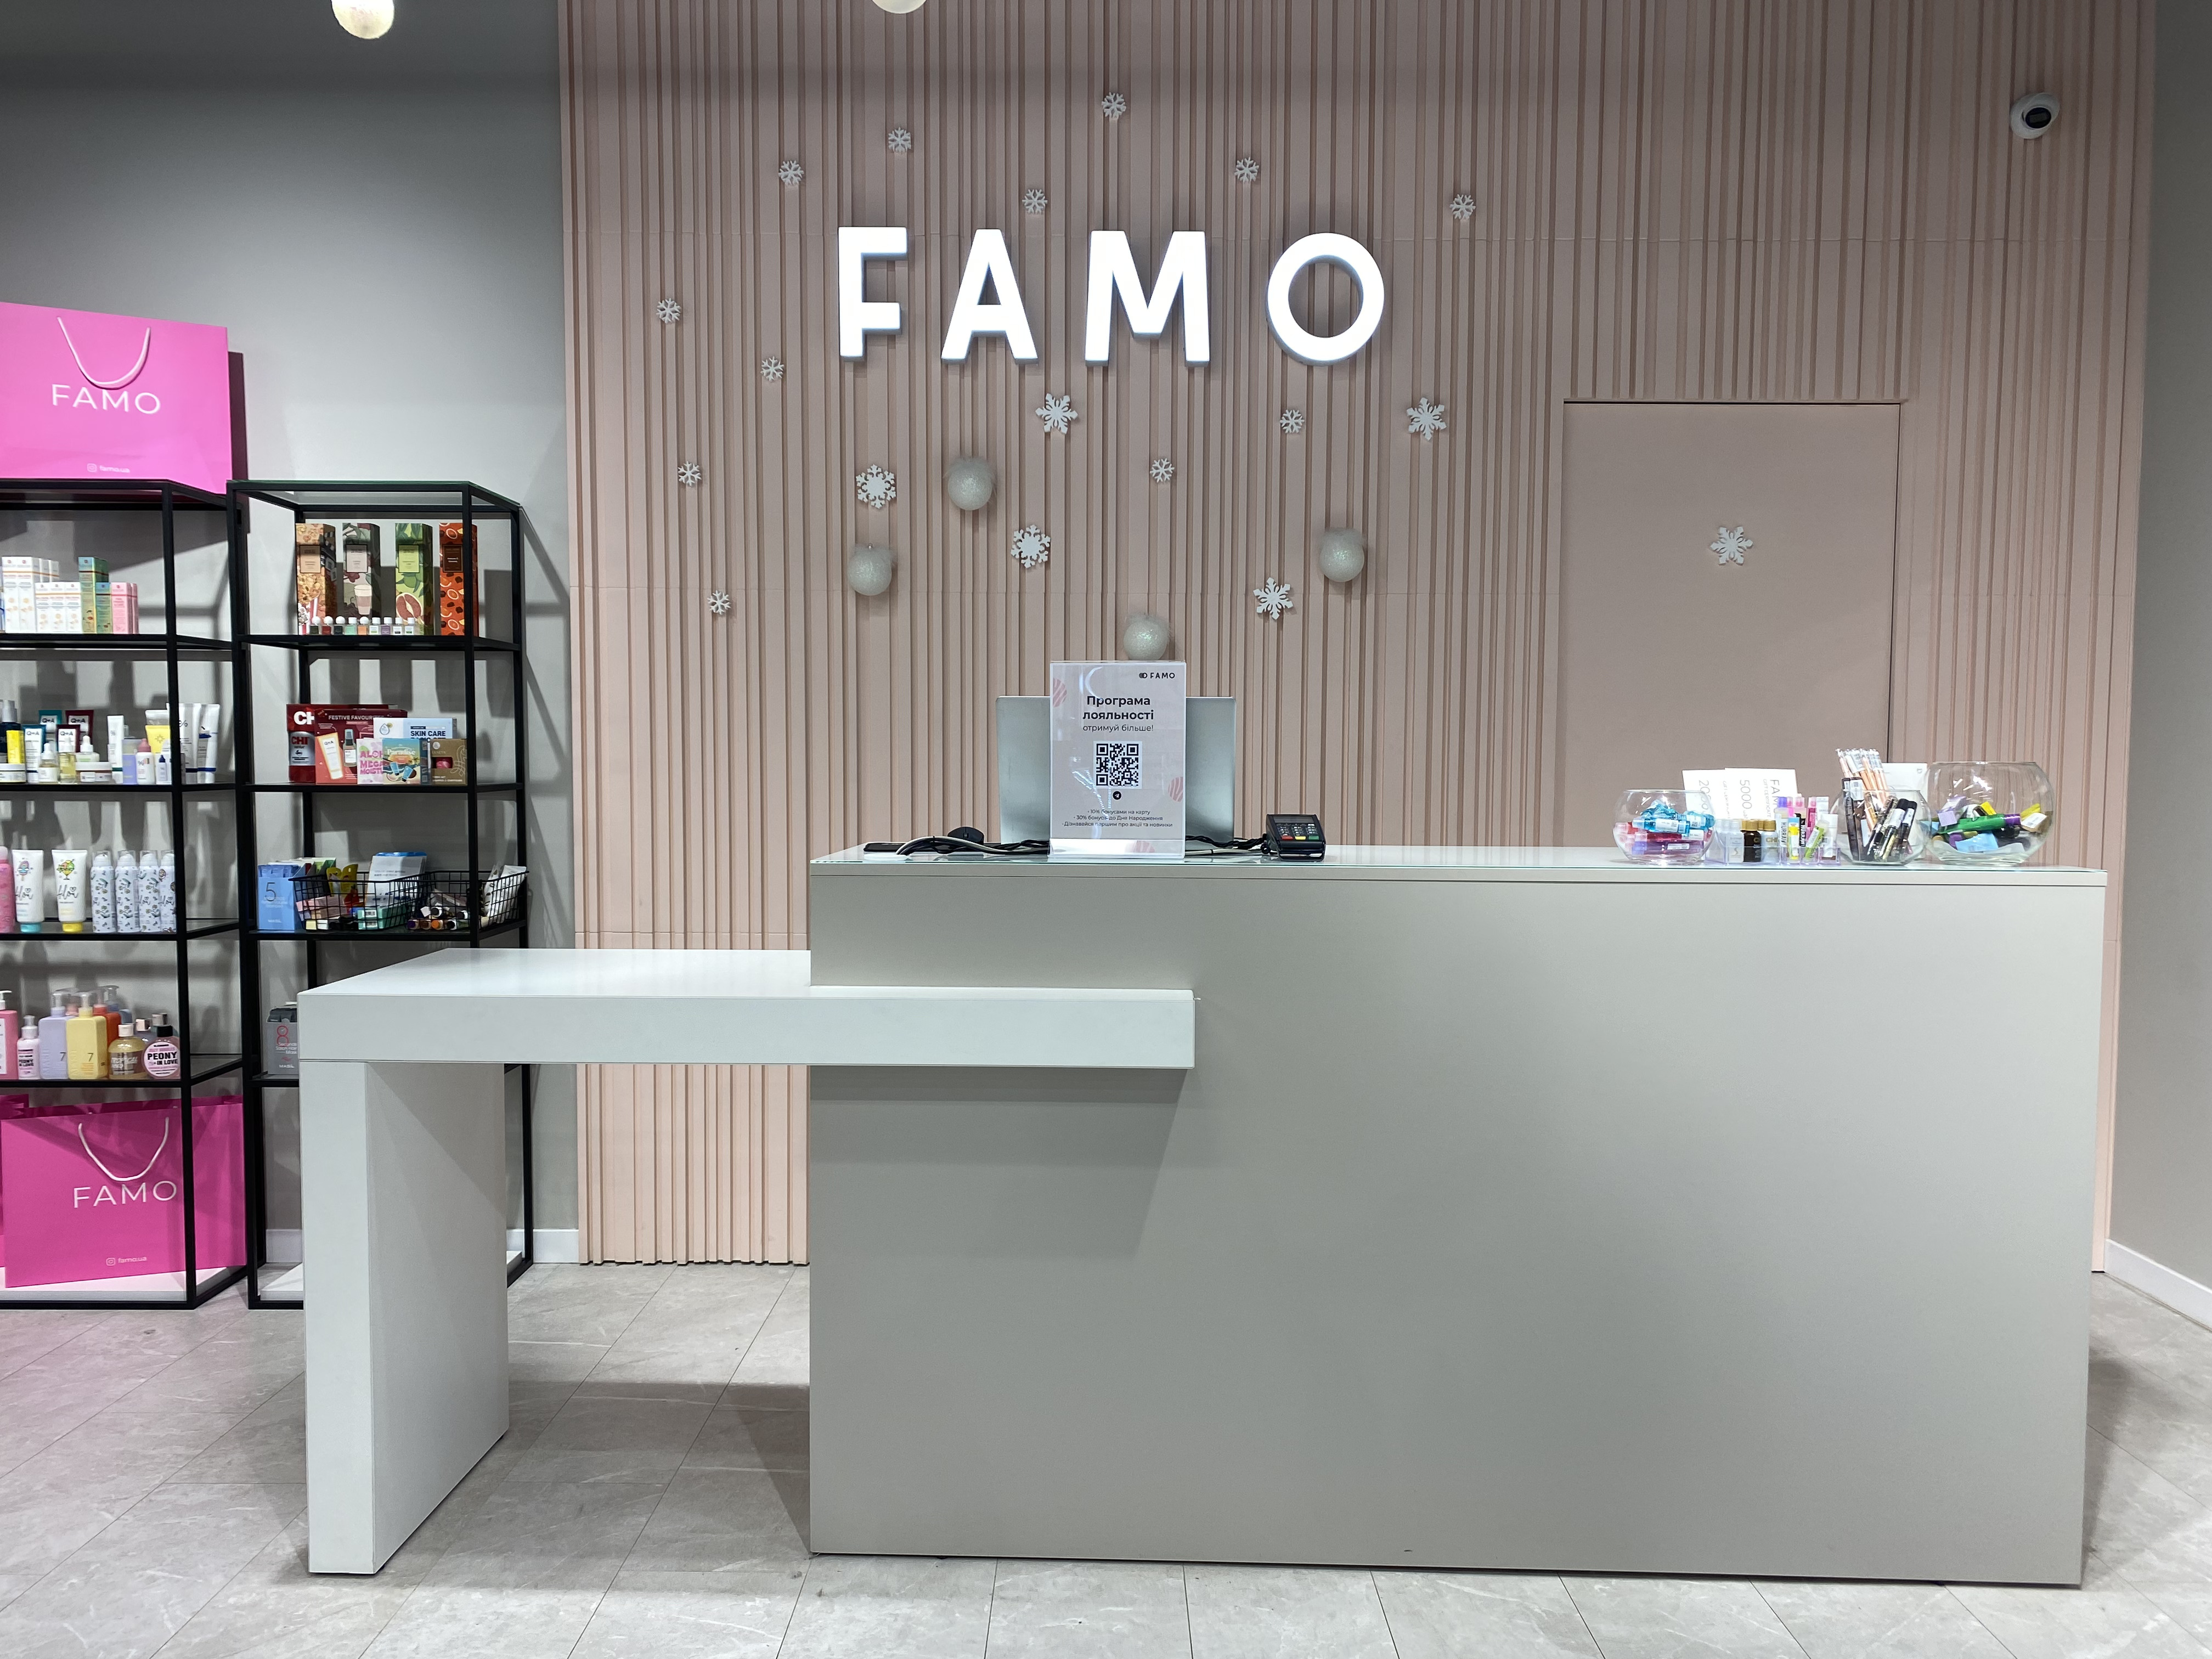 Один з магазинів  мережі Famo/фото надане Юлією Томусяк